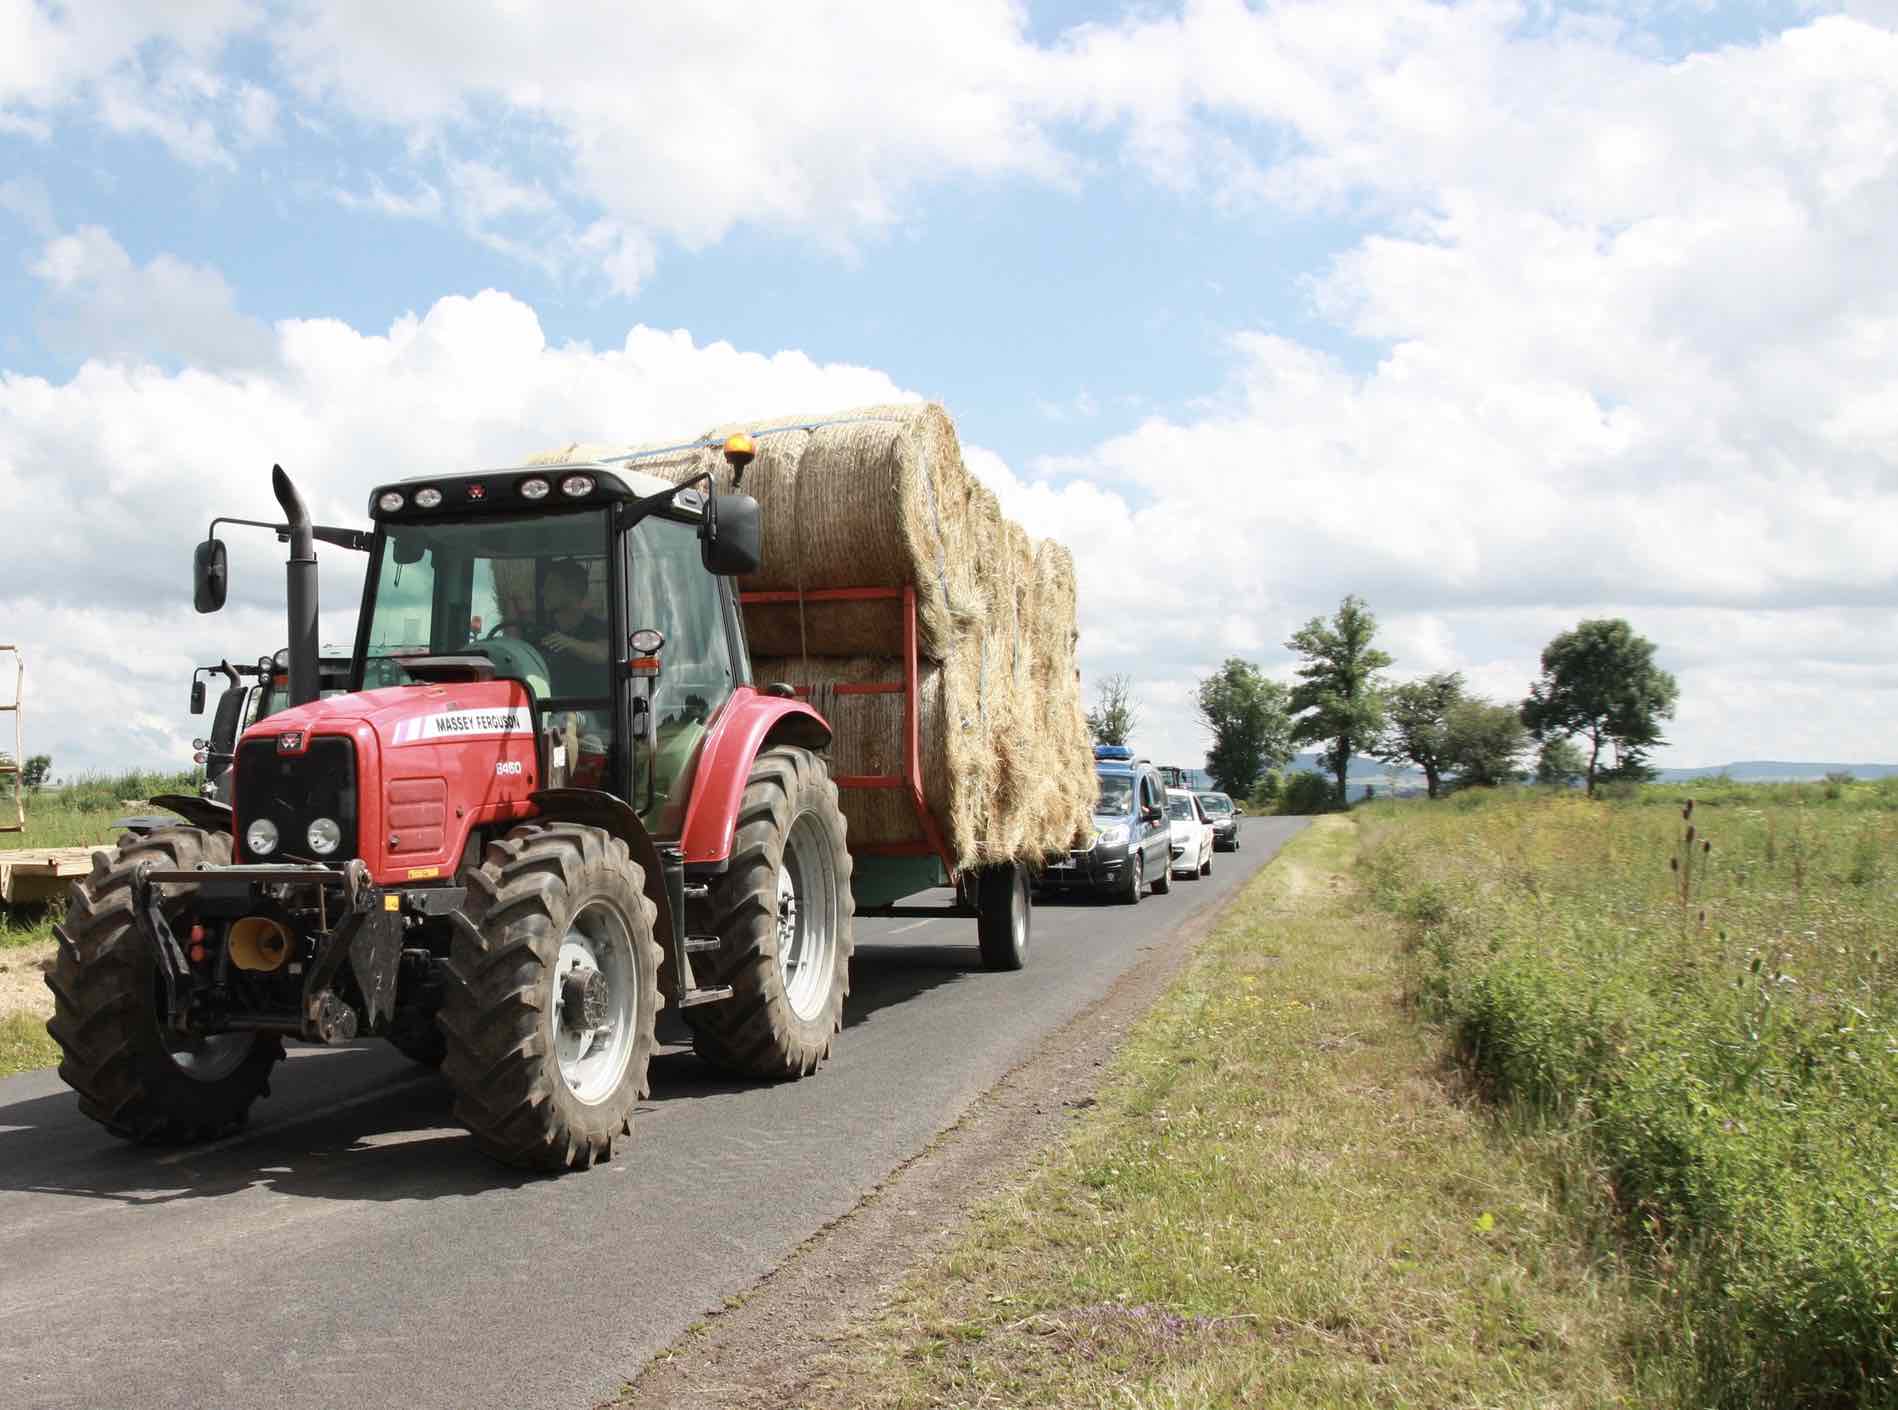 Feux de signalisation pour les tracteurs : quelles obligations ?